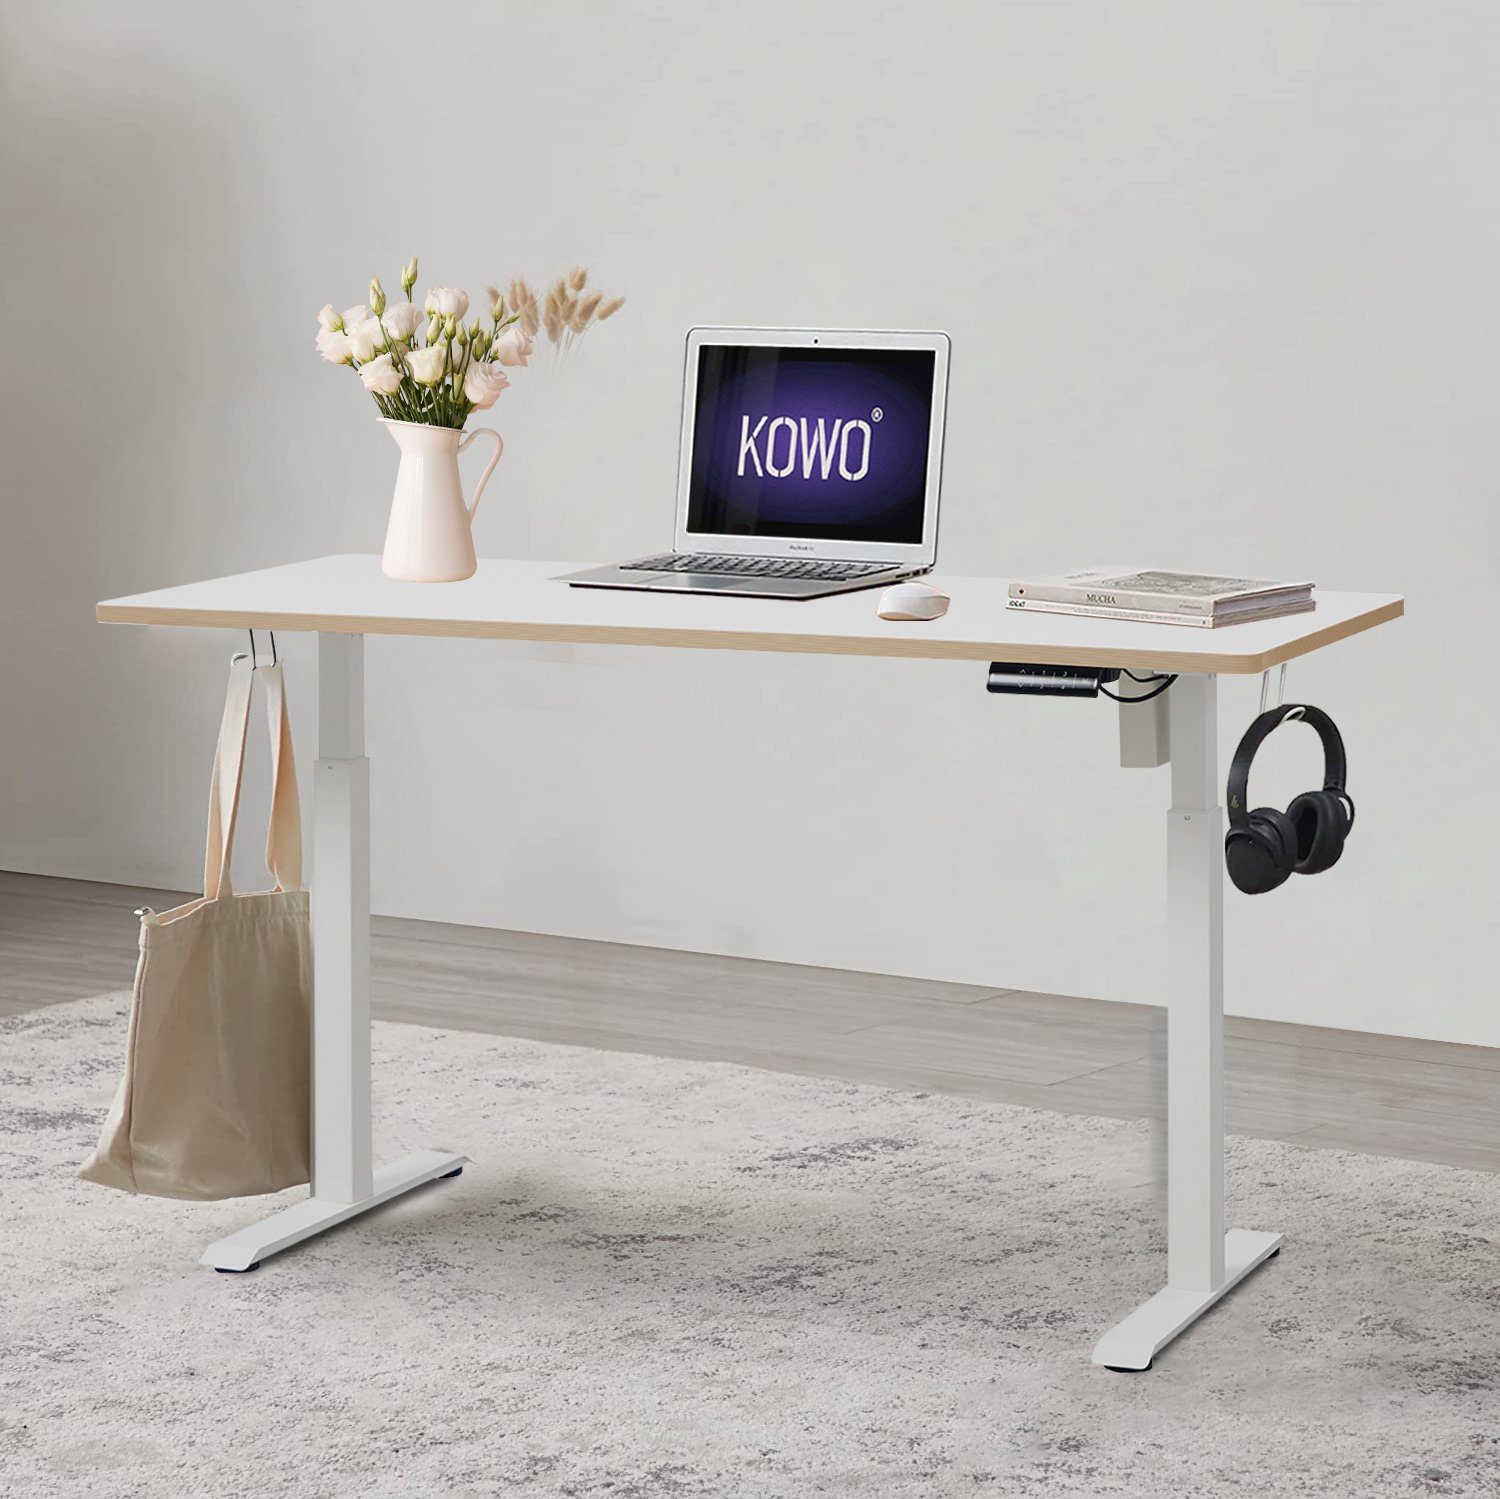 KOWO Schreibtisch Höhenverstellbarer Schreibtisch 160 cm Bürotisch mit Tischgestell, mit USB C Ladegerät und USB Netzteil für iPhone, iPad, MacBook, Handy